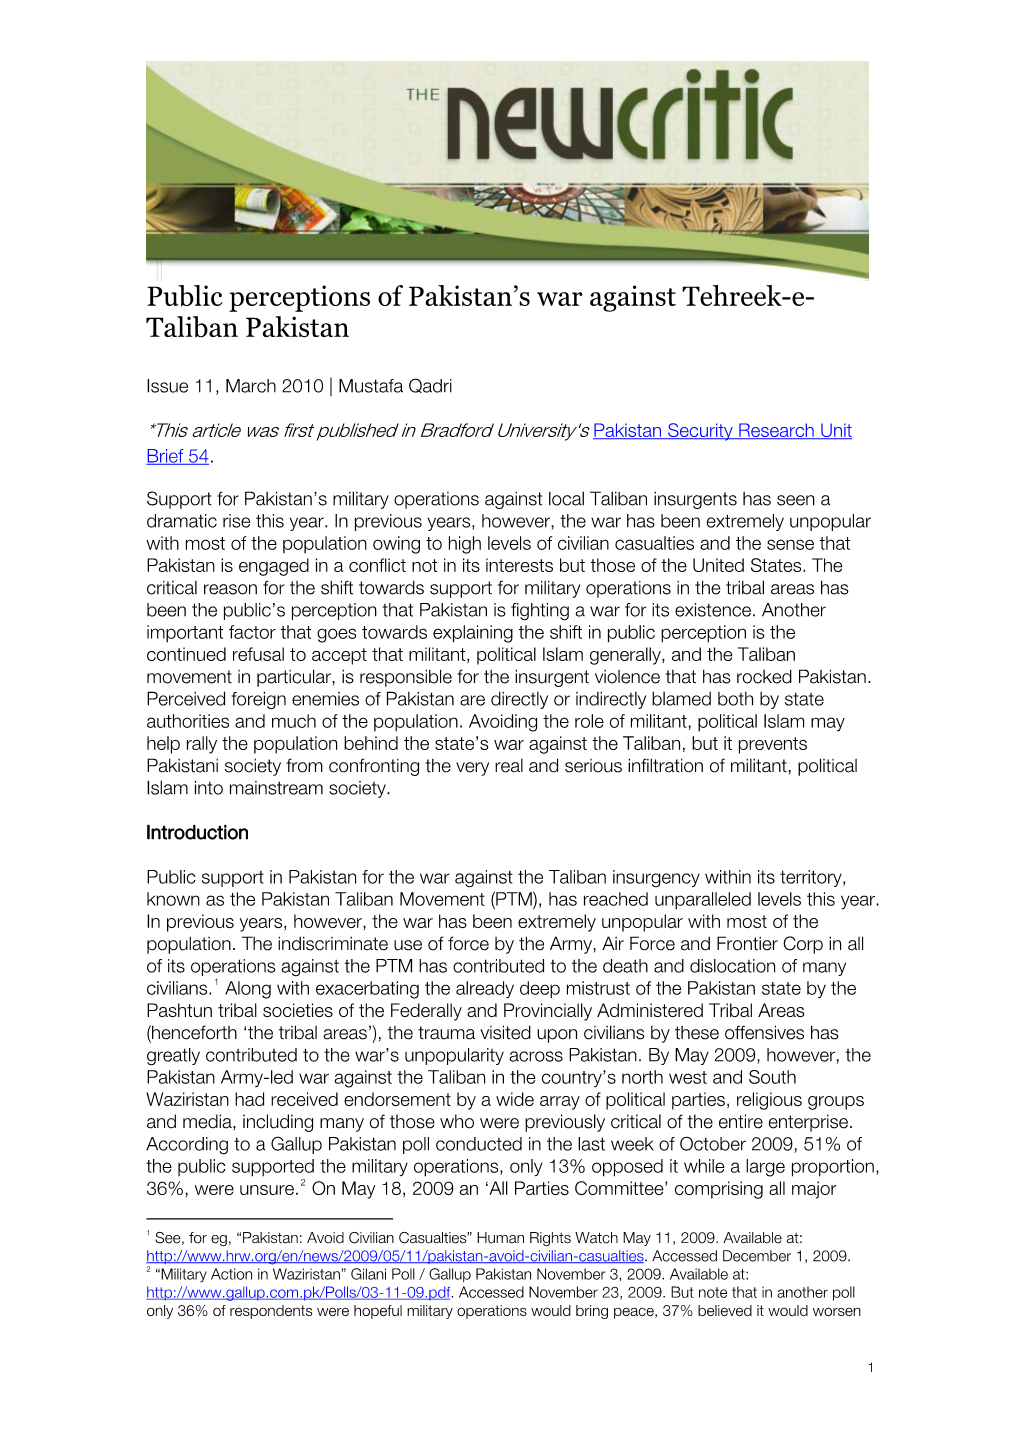 Public Perceptions of Pakistan's War Against Tehreek-E- Taliban Pakistan